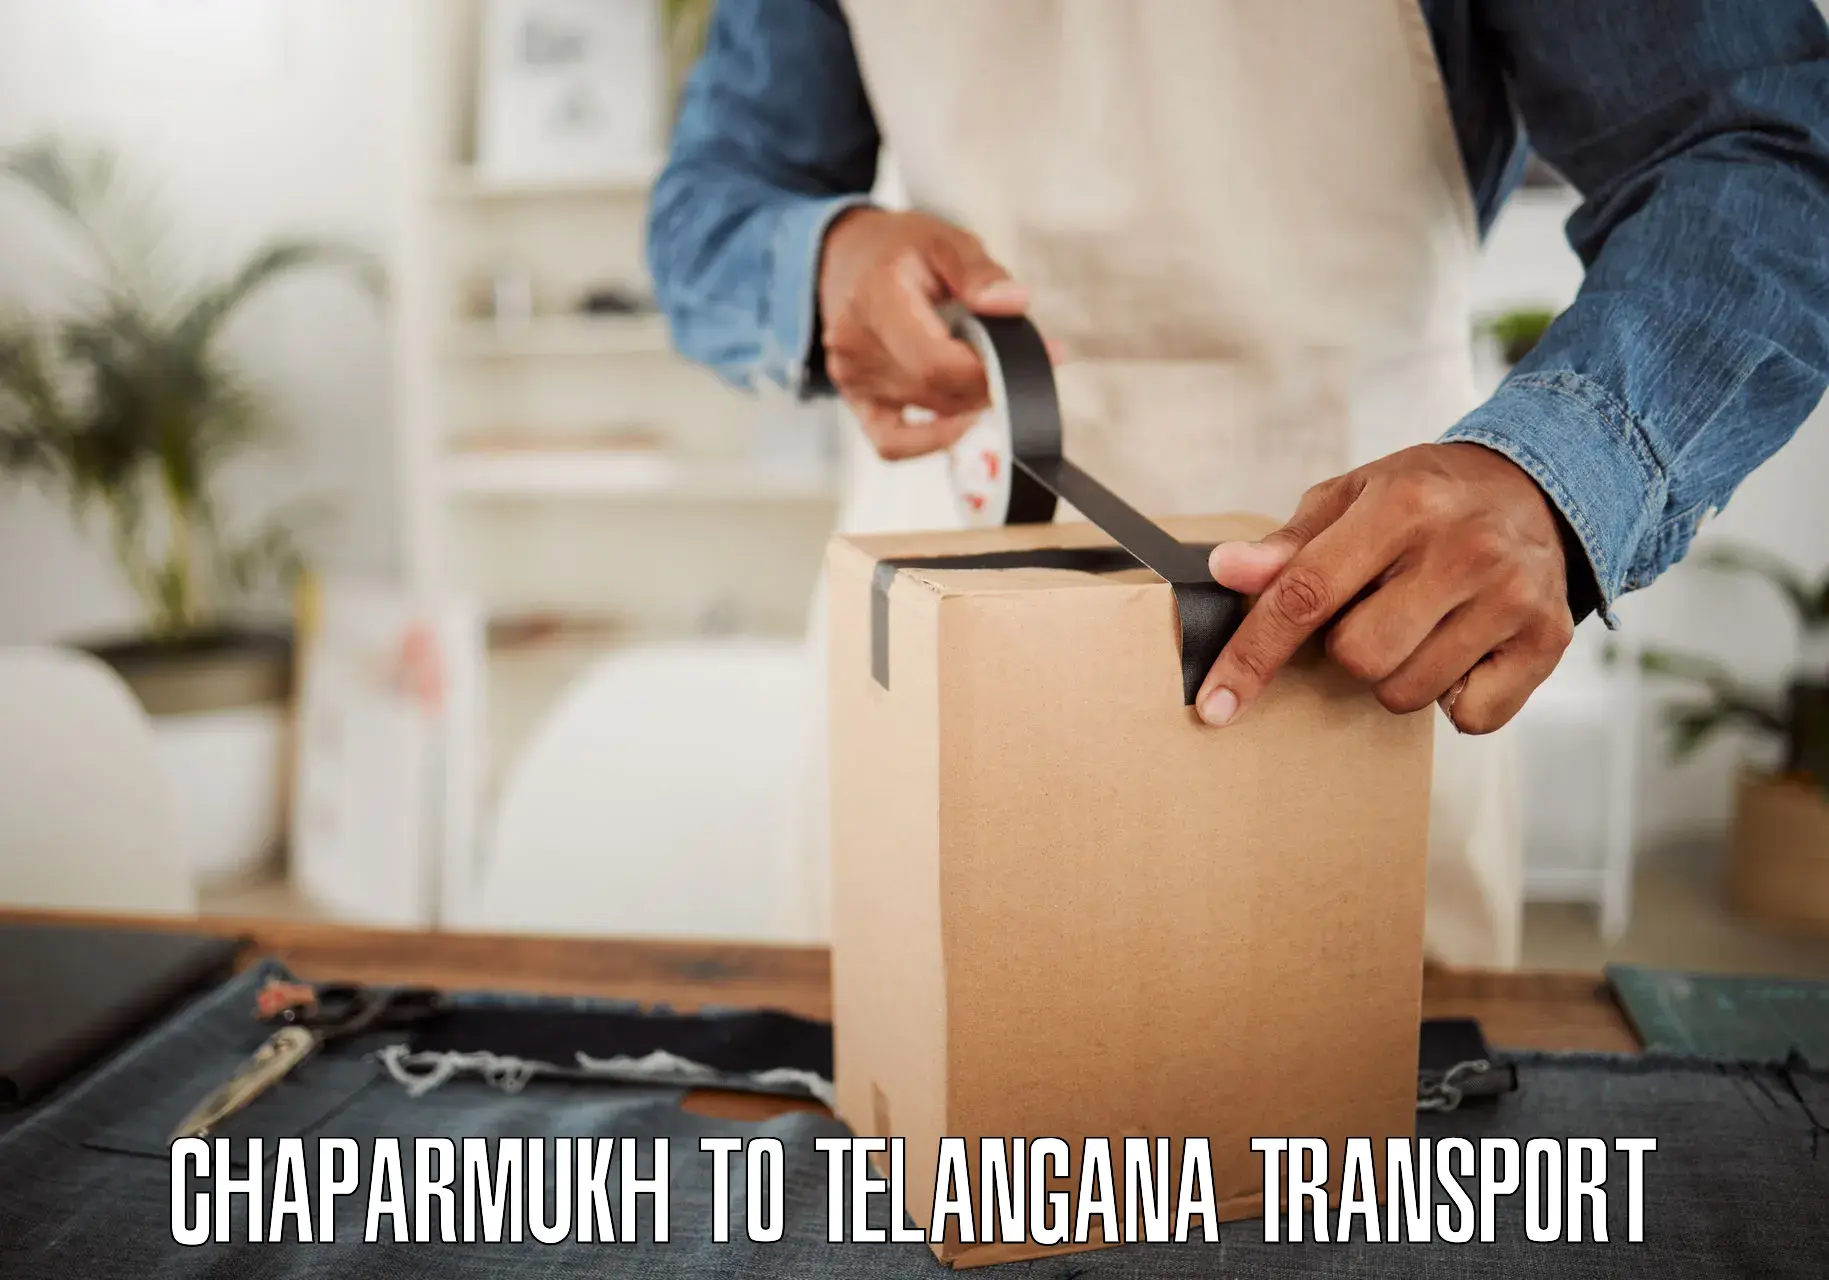 Transport in sharing Chaparmukh to Kothakota